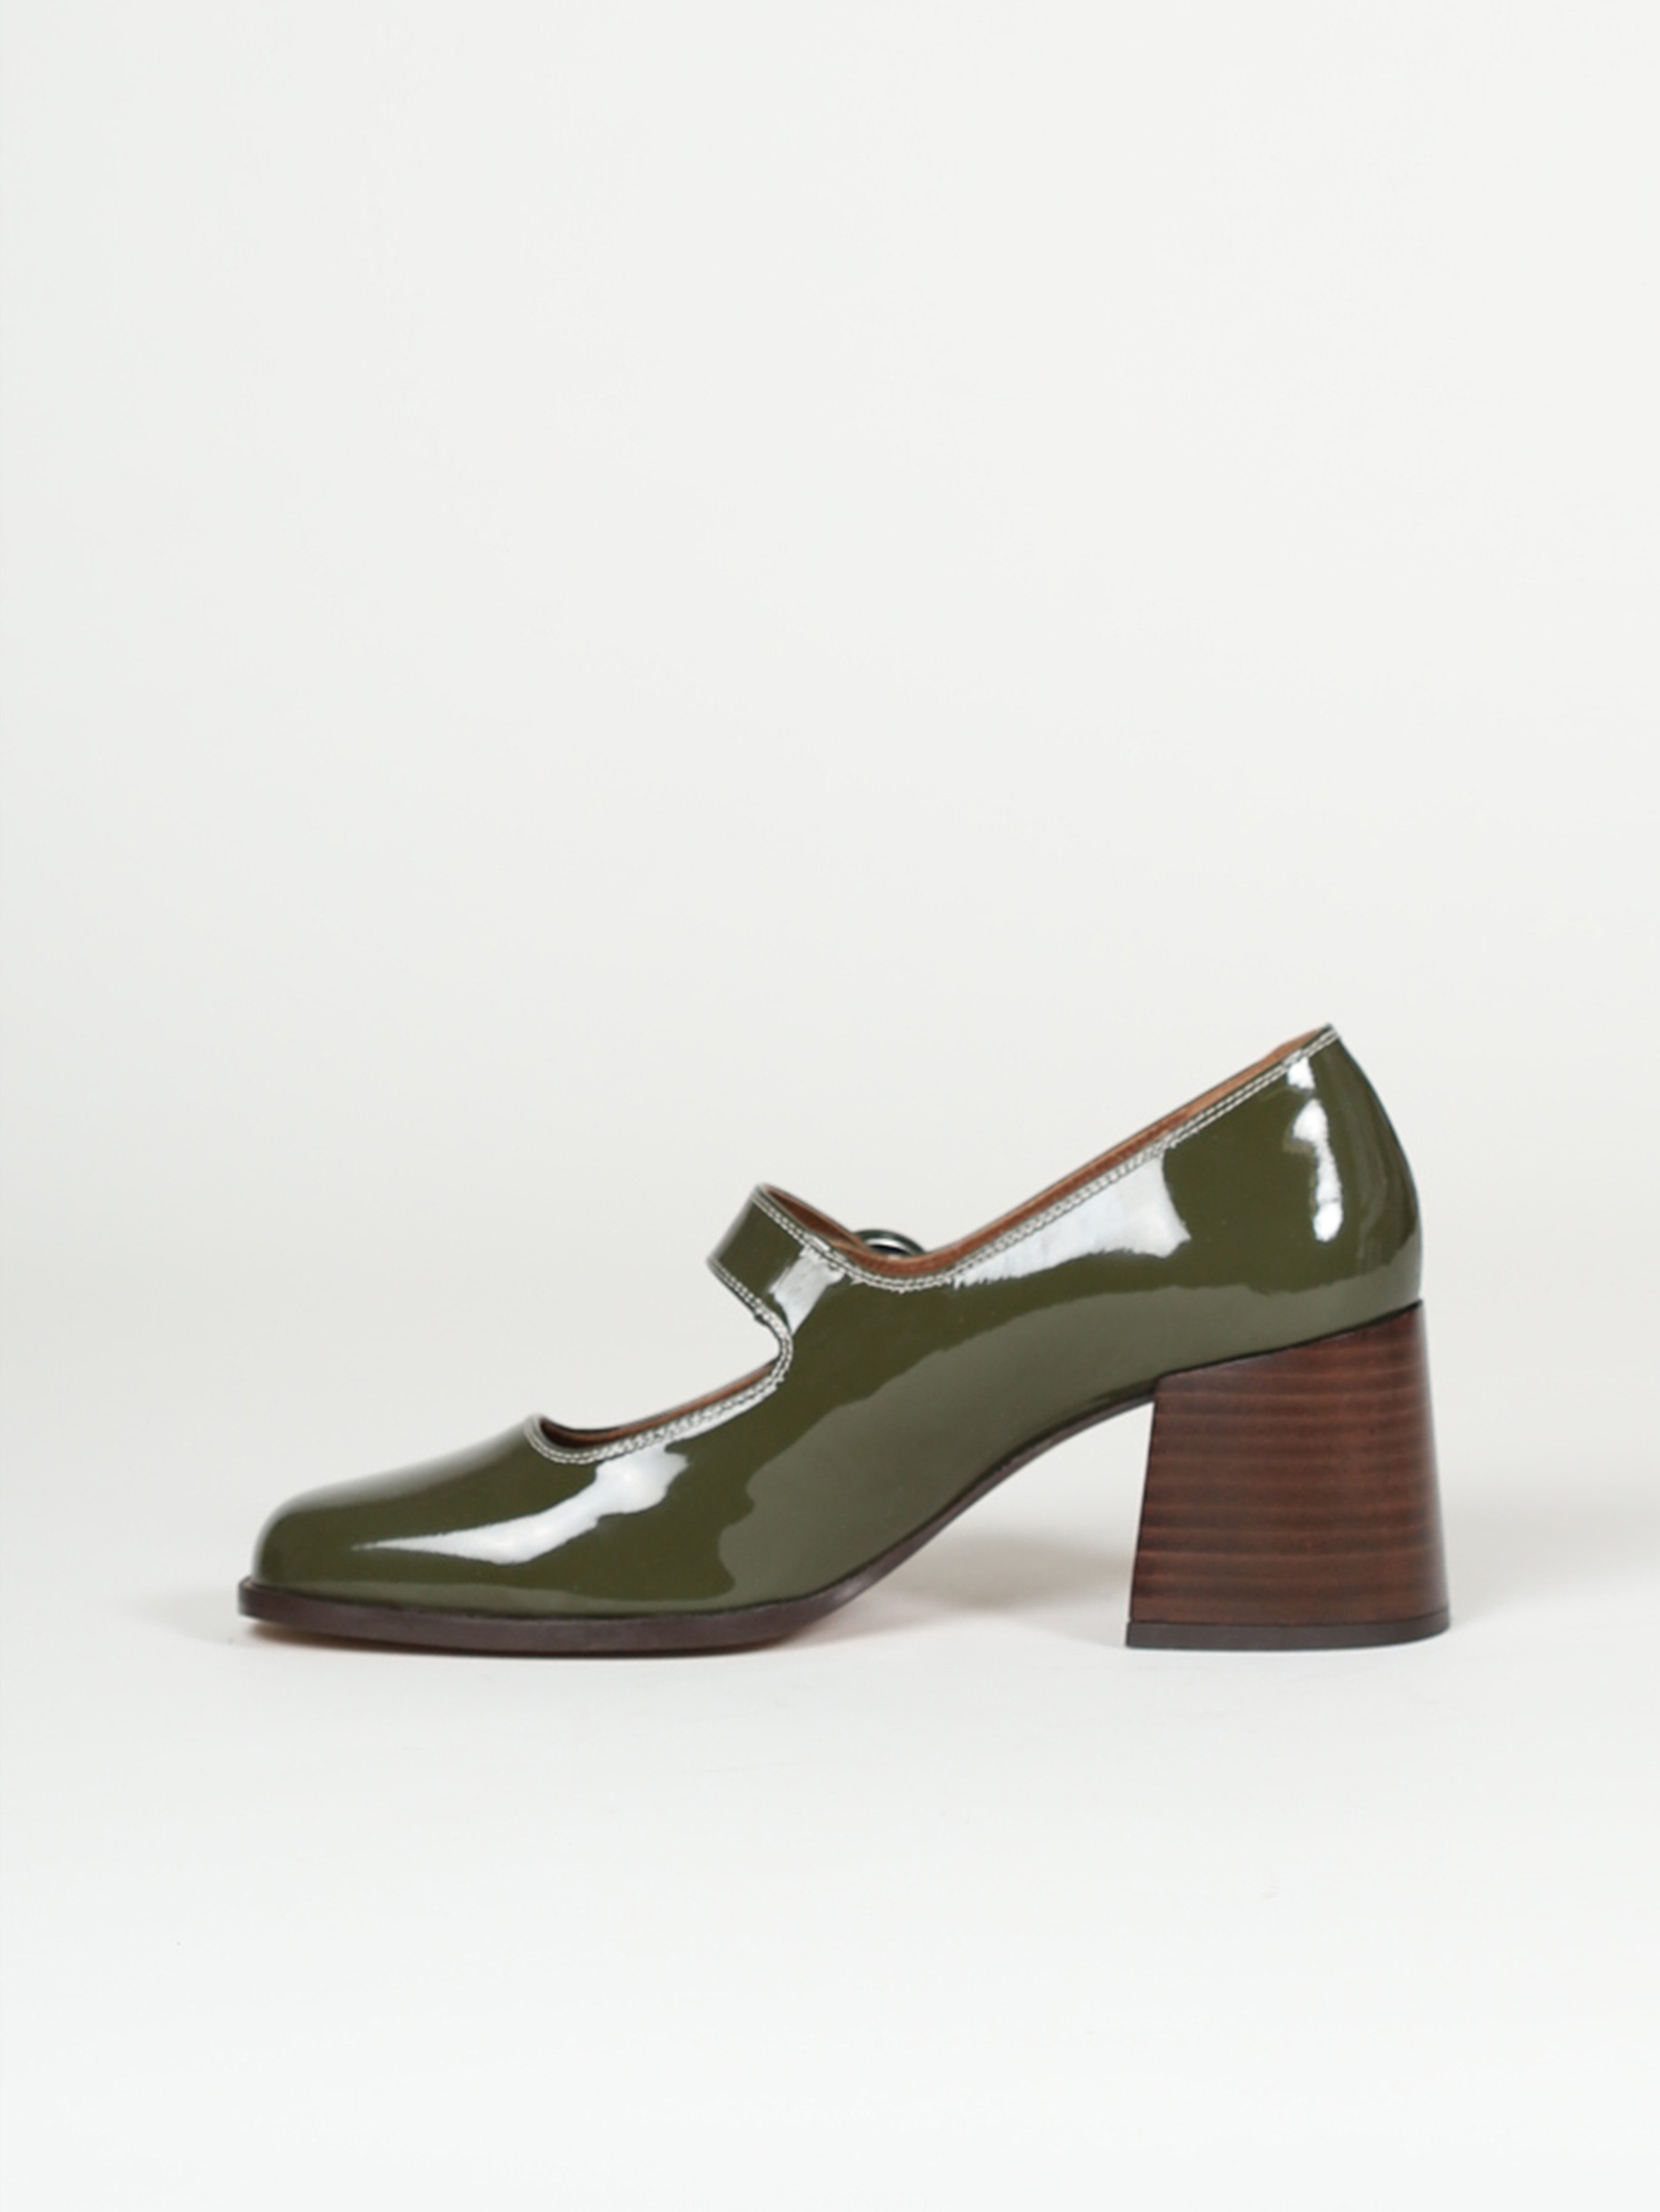 CAREN khaki patent leather Mary Janes | Carel Paris Shoes